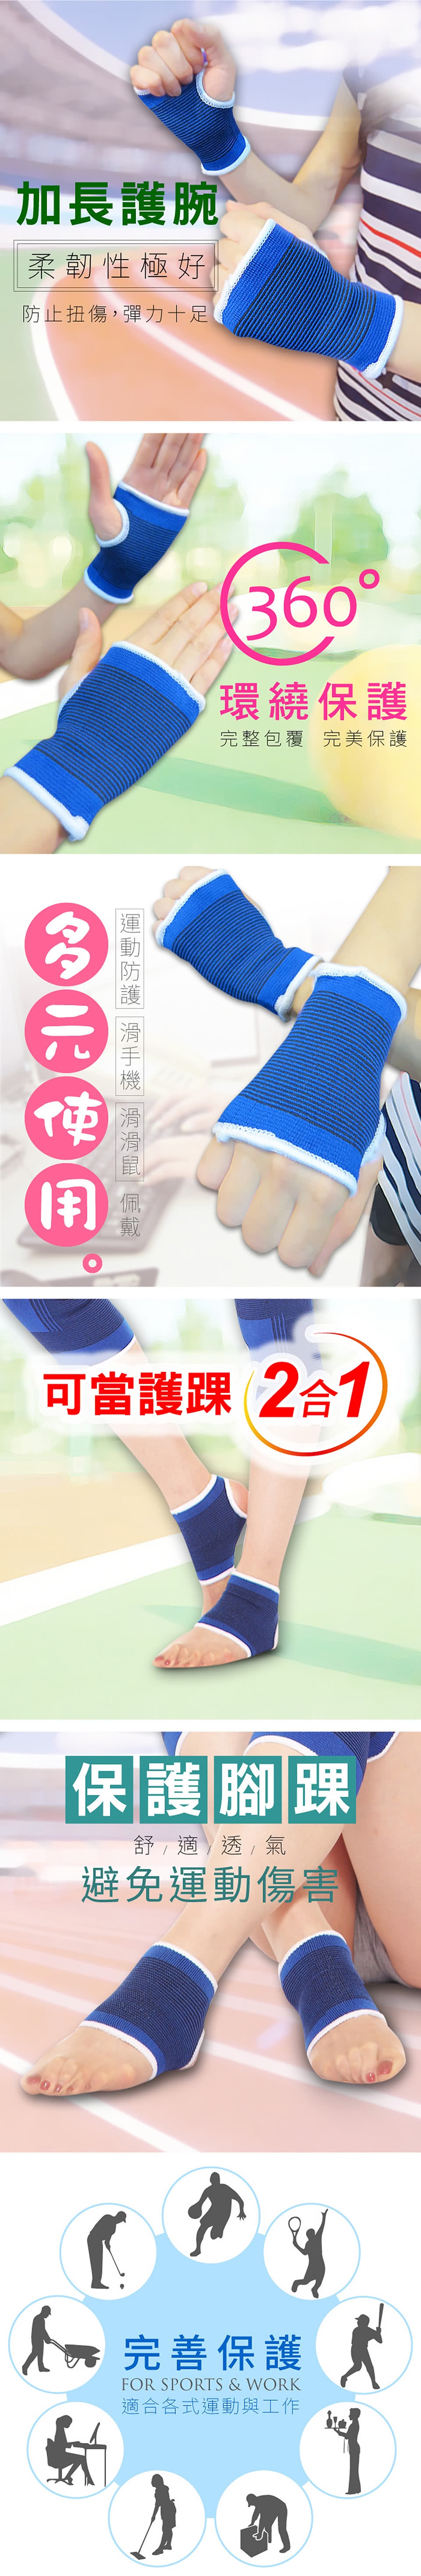 【Yi-sheng】*獨家專利* 拉塑緊雕完美曲線伸展帶(專利伸展帶*2+藍色護腕)